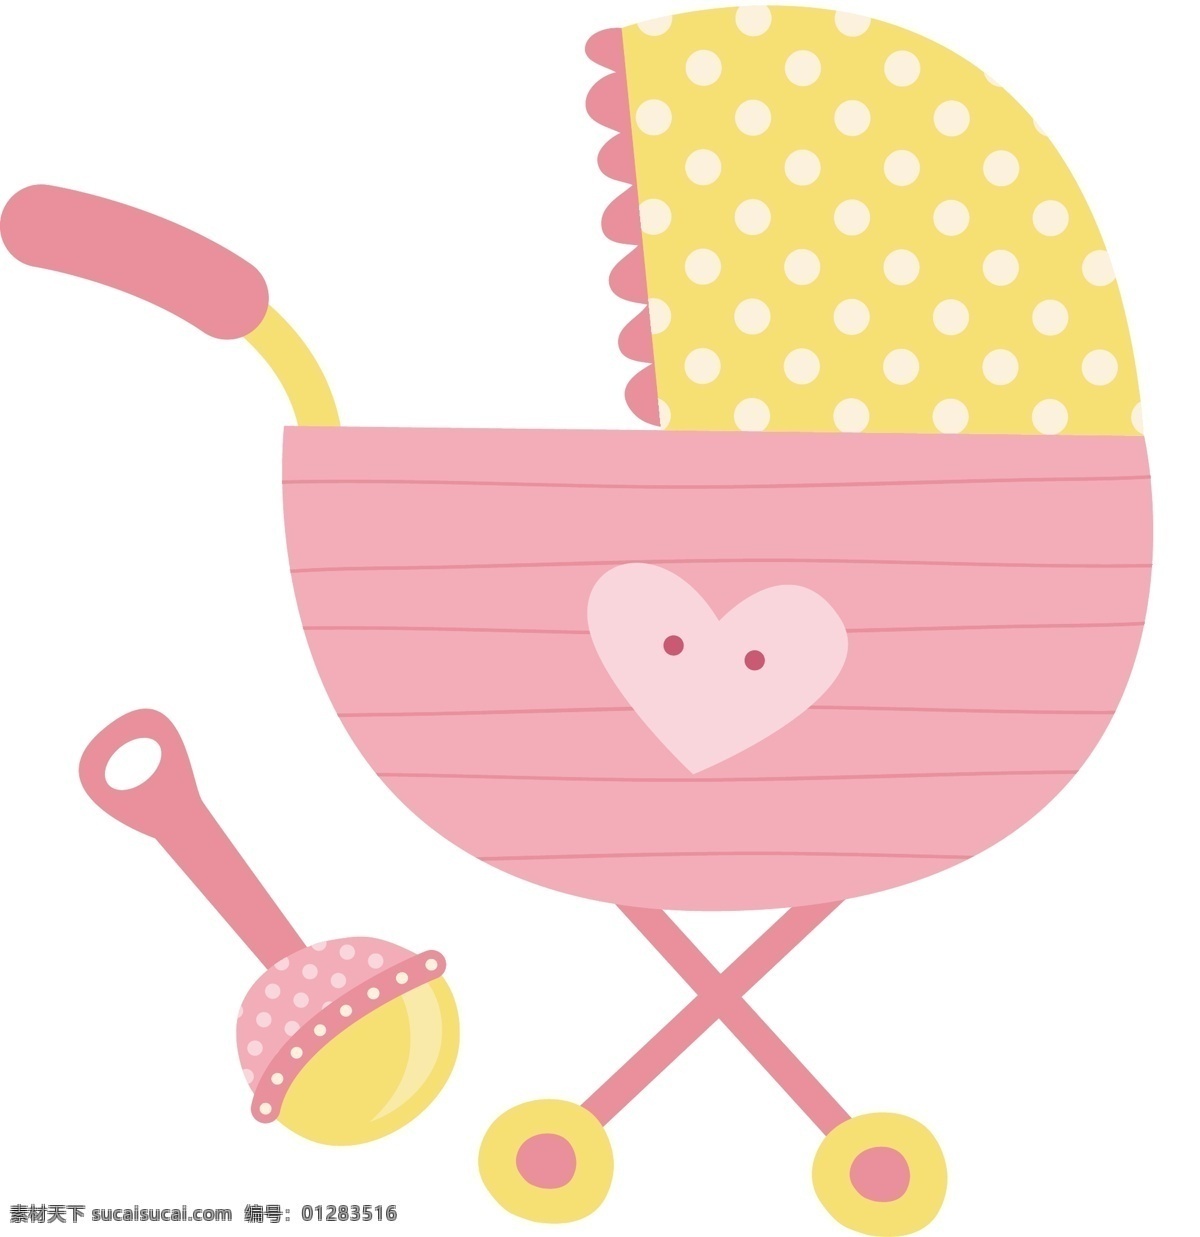 粉色婴儿车 婴儿车 玩具 婴儿玩具 卡通玩具 粉色 生活百科 生活用品